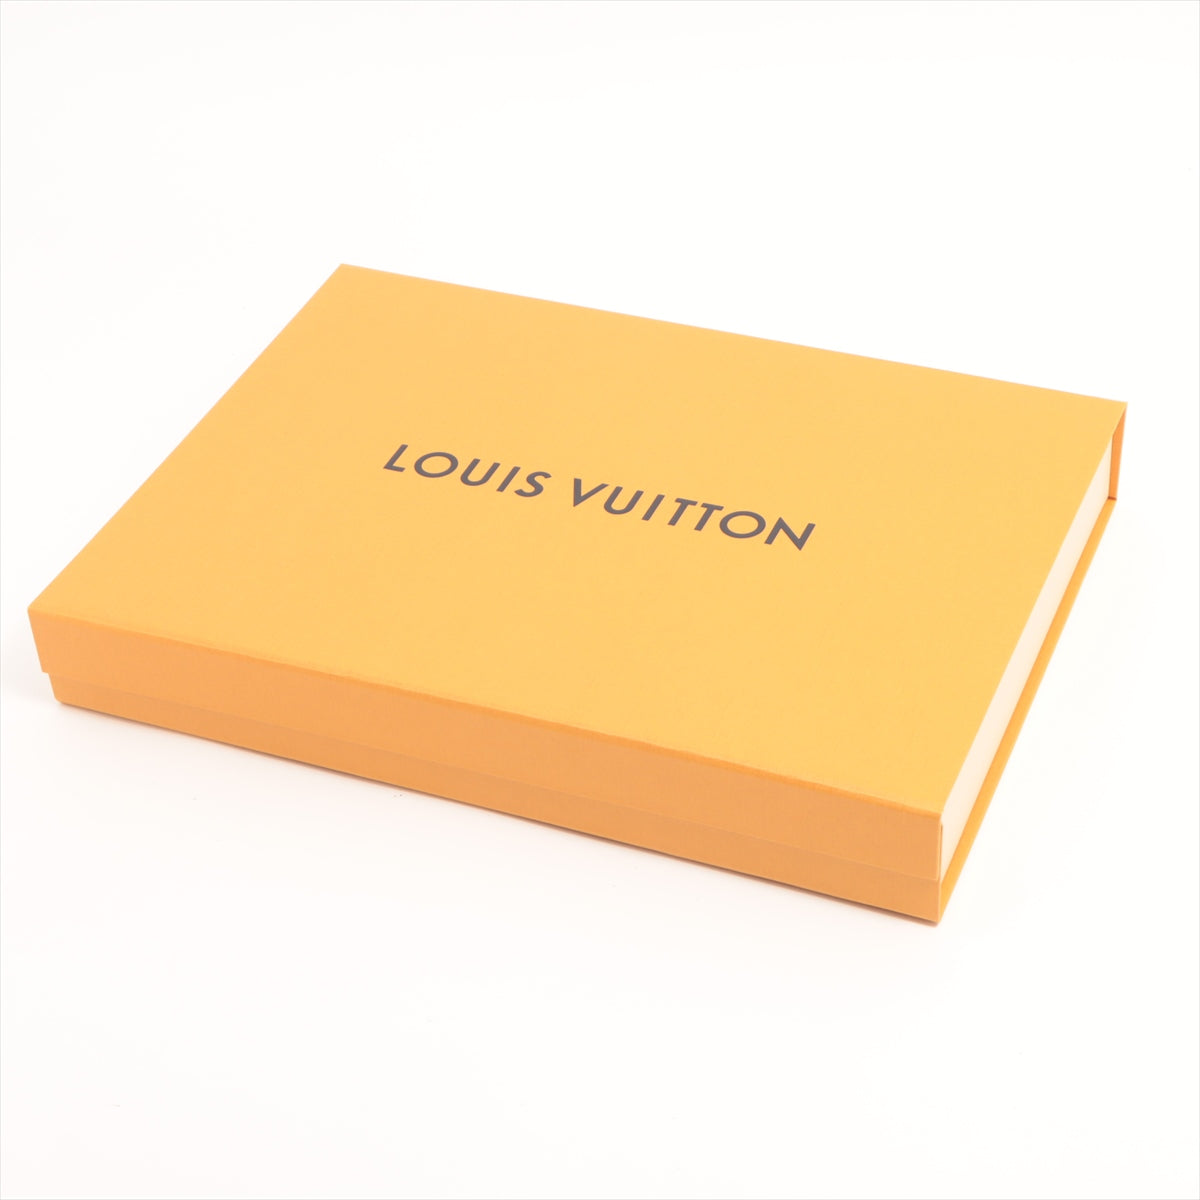 Louis Vuitton Reykjavik Cashmere Scarf Beige Gradient - THE PURSE AFFAIR